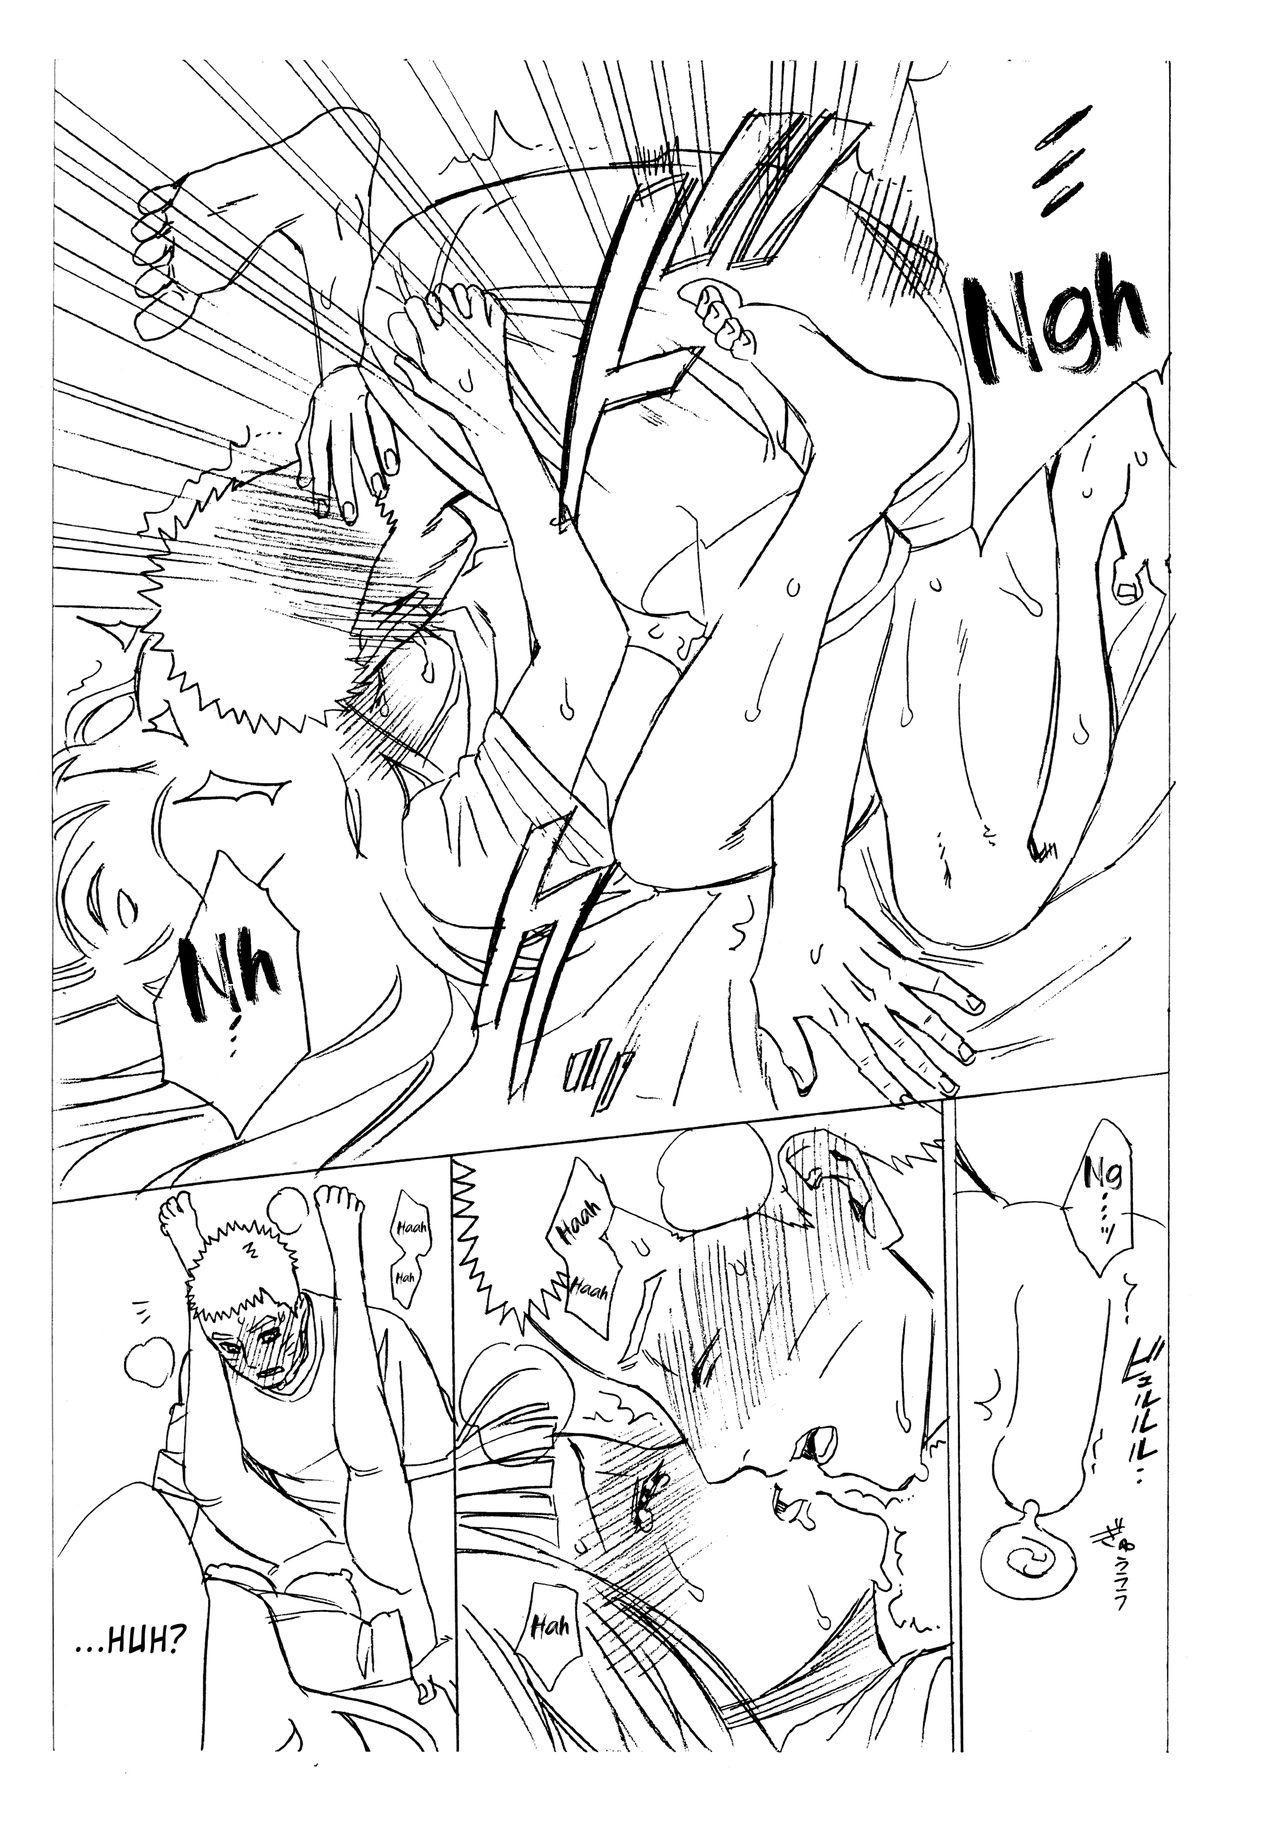 Negra 1 + 2 | Ato no Futari v1 - Naruto Watersports - Page 73